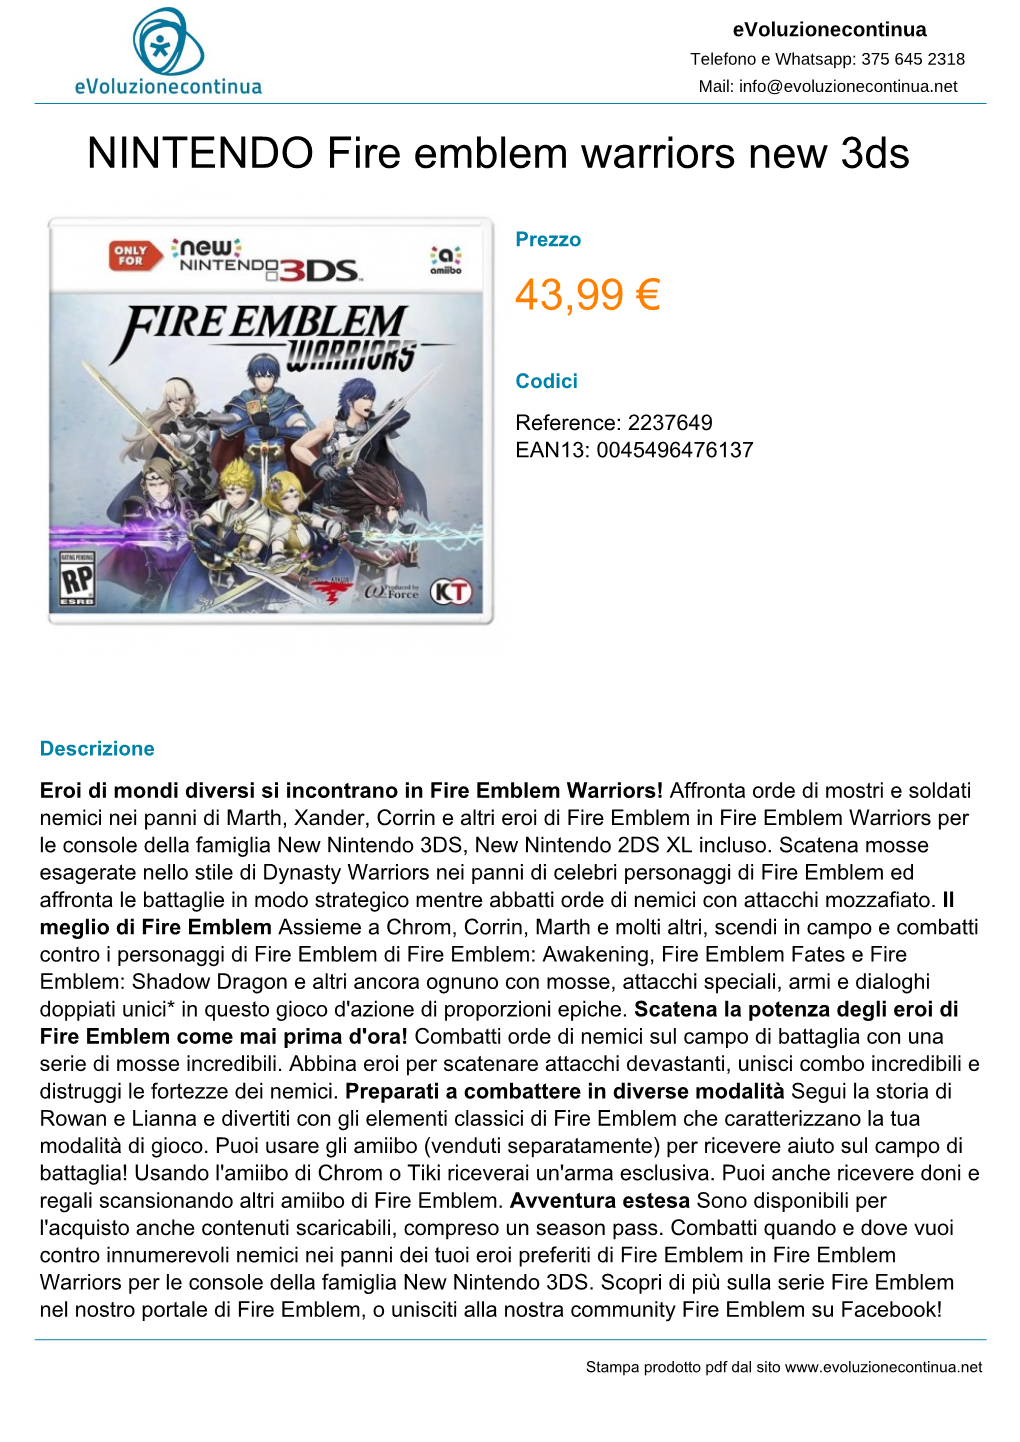 Nintendo Fire Emblem Warriors New 3DS 43,99 €